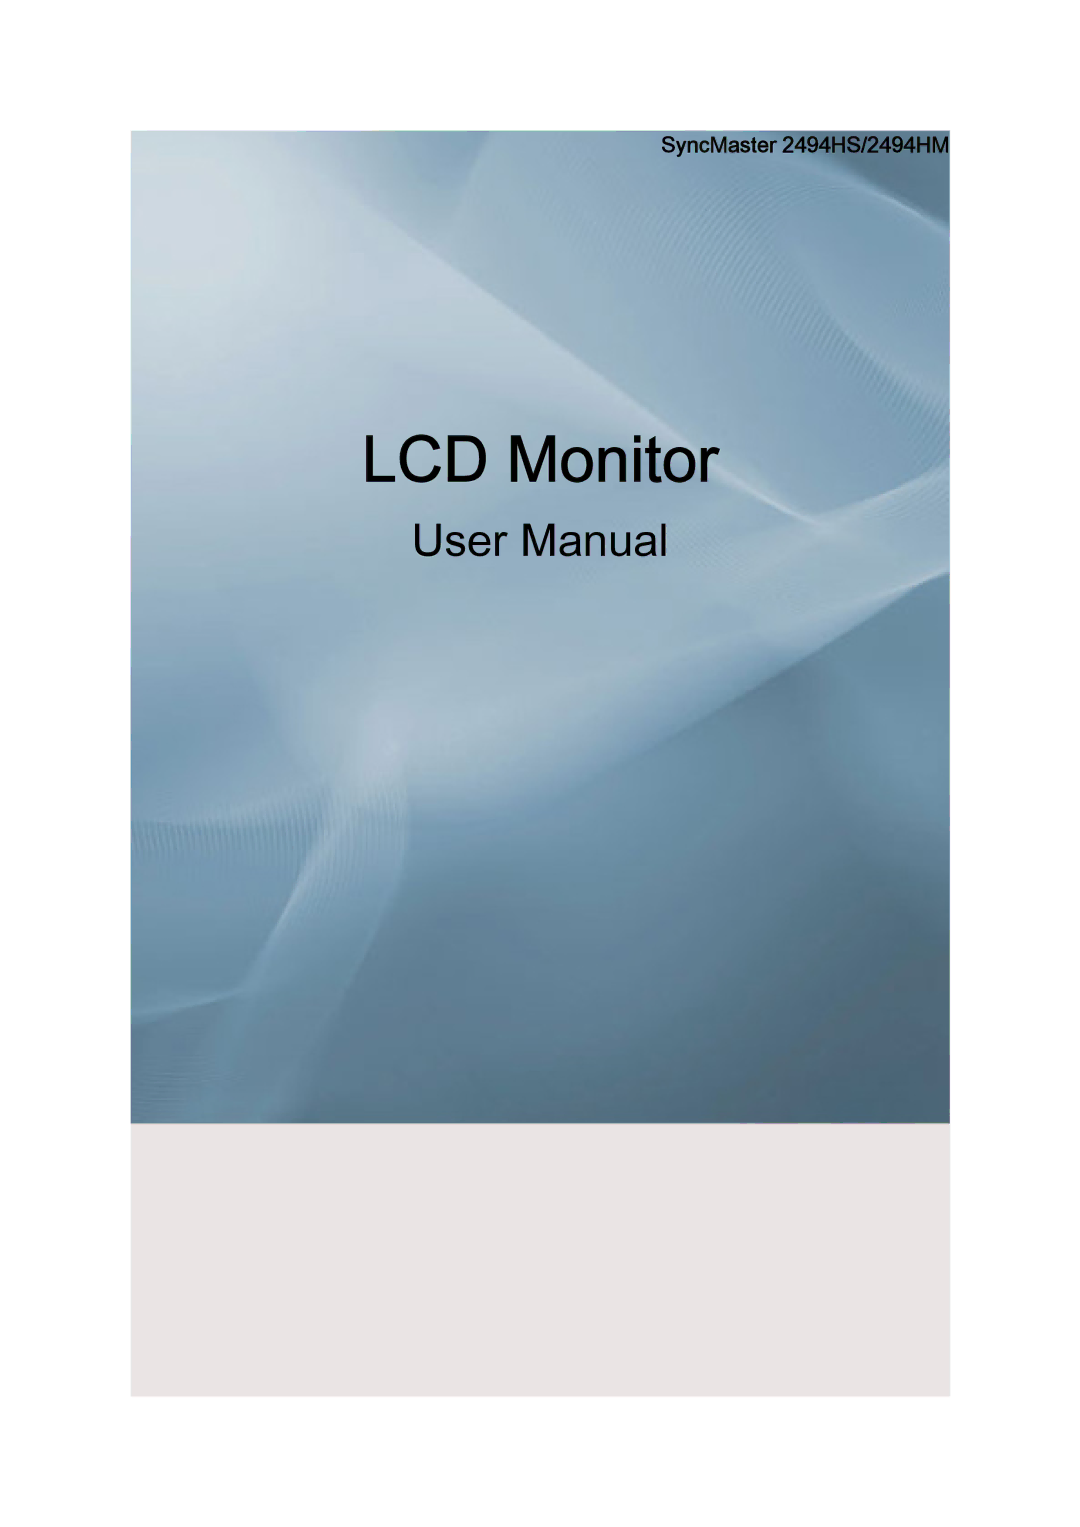 Samsung LS24KIVKBQ/EDC, LS24KIQRFV/EDC manual LCD Монитор, SyncMaster 2494HS/2494HM 